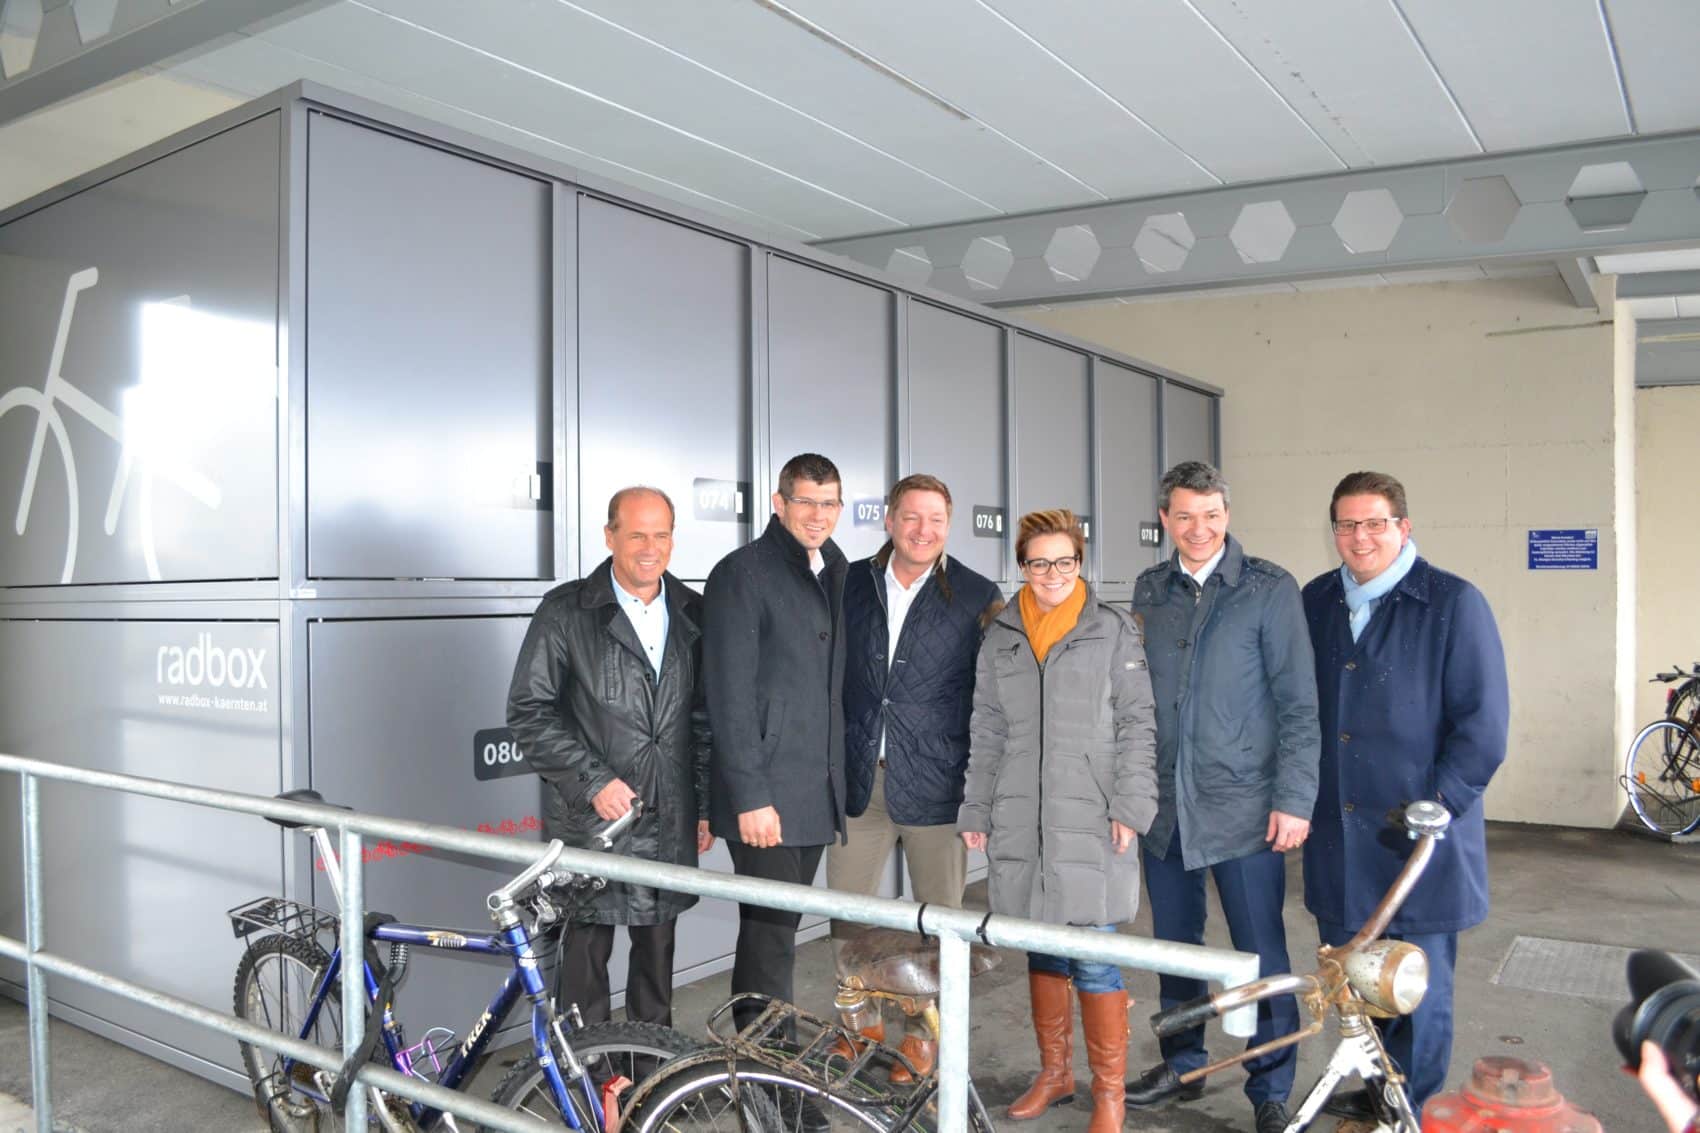 Mobilitätslandesrat Ulrich Zafoschnig und Straßenbaulandesrat Martin Gruber präsentieren die neuen Radboxen. 